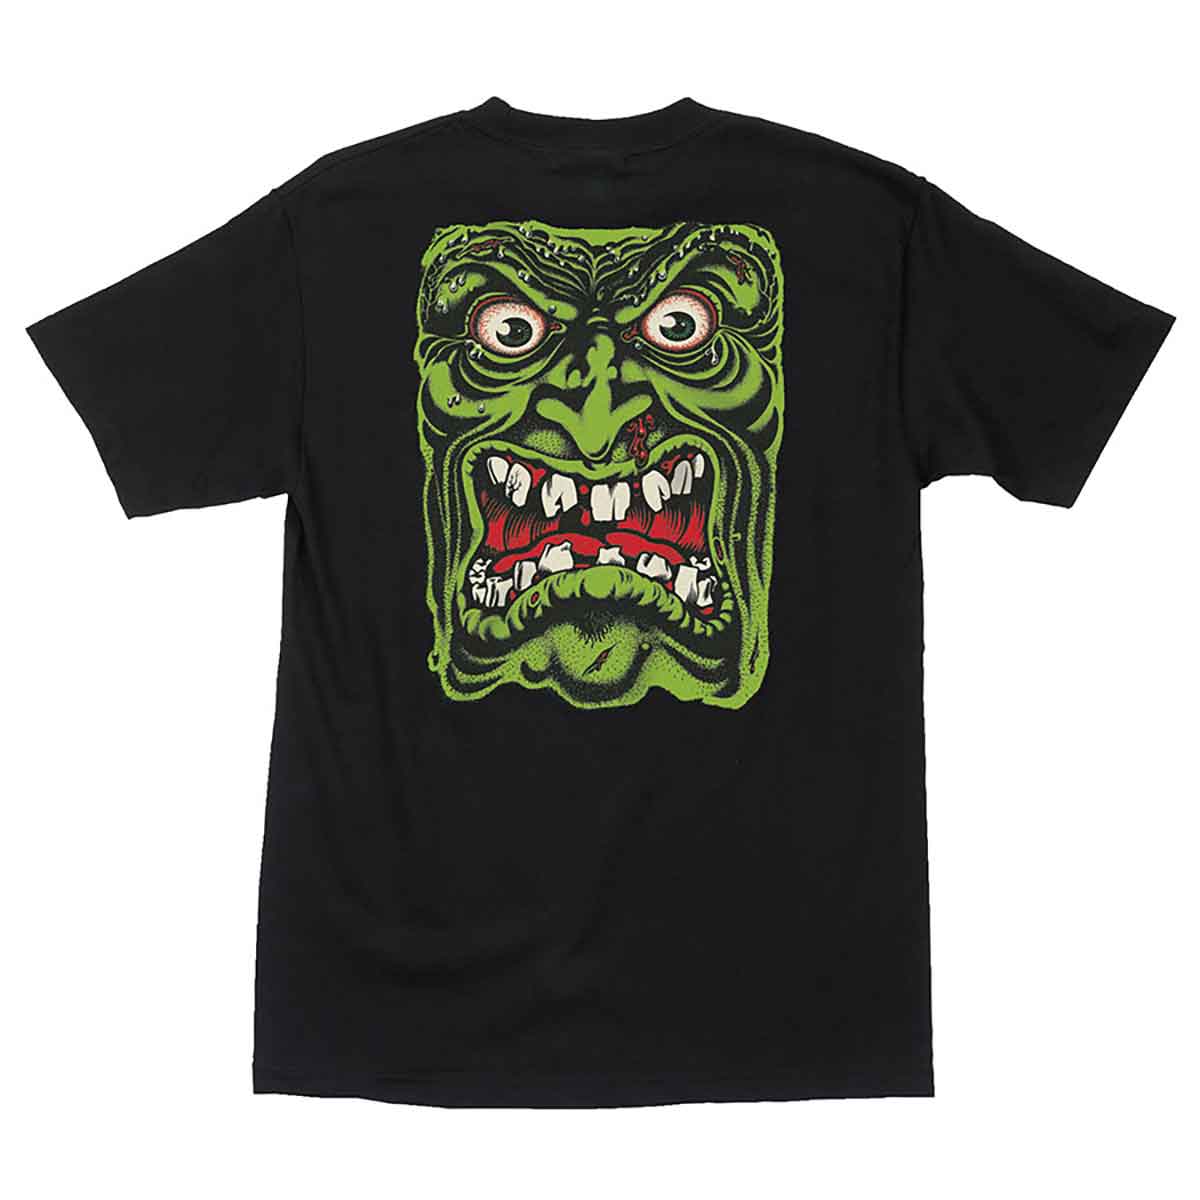 Santa Cruz Skateboards Rob Roskopp Face T-Shirt - Black | SoCal Skateshop